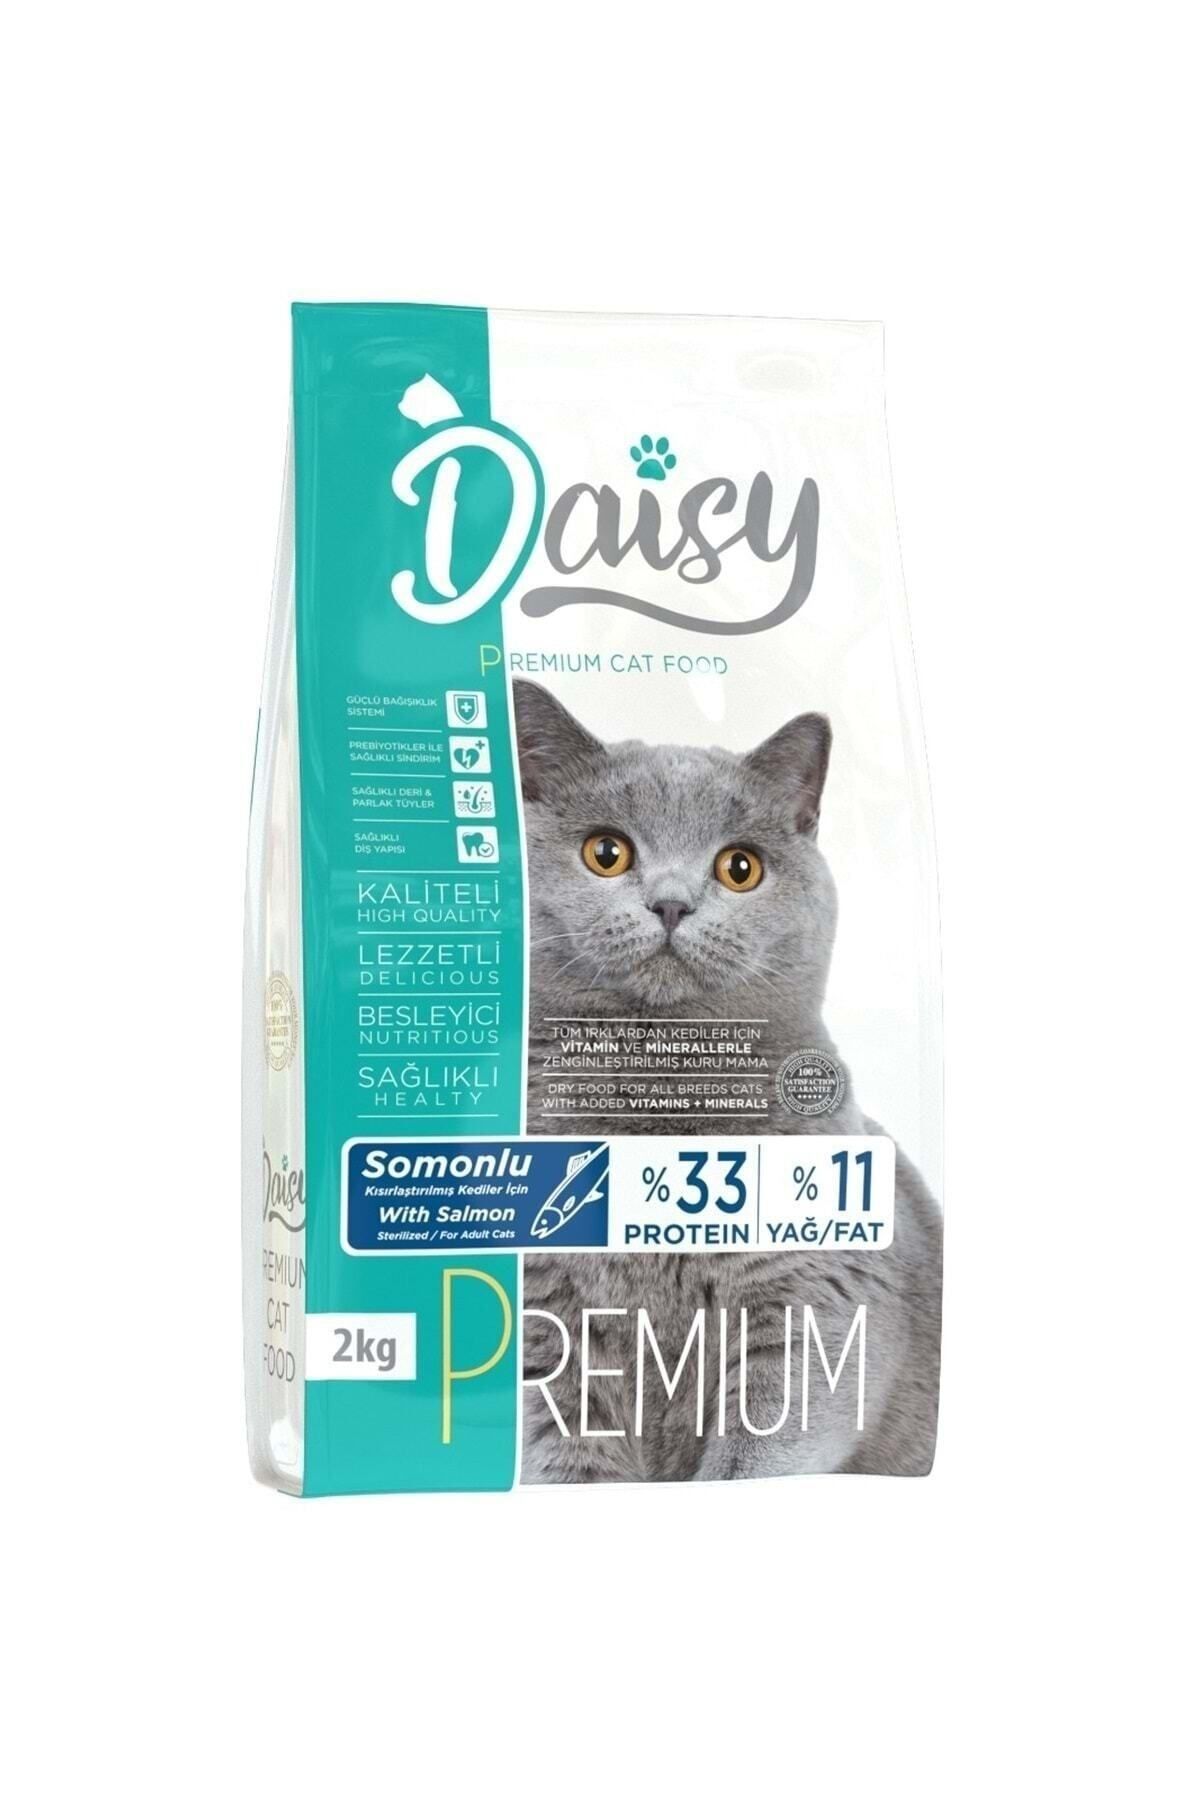 Daisy Premium Sterilised Somonlu Kısırlaştırılmış Yetişkin Kedi Maması 2 kg